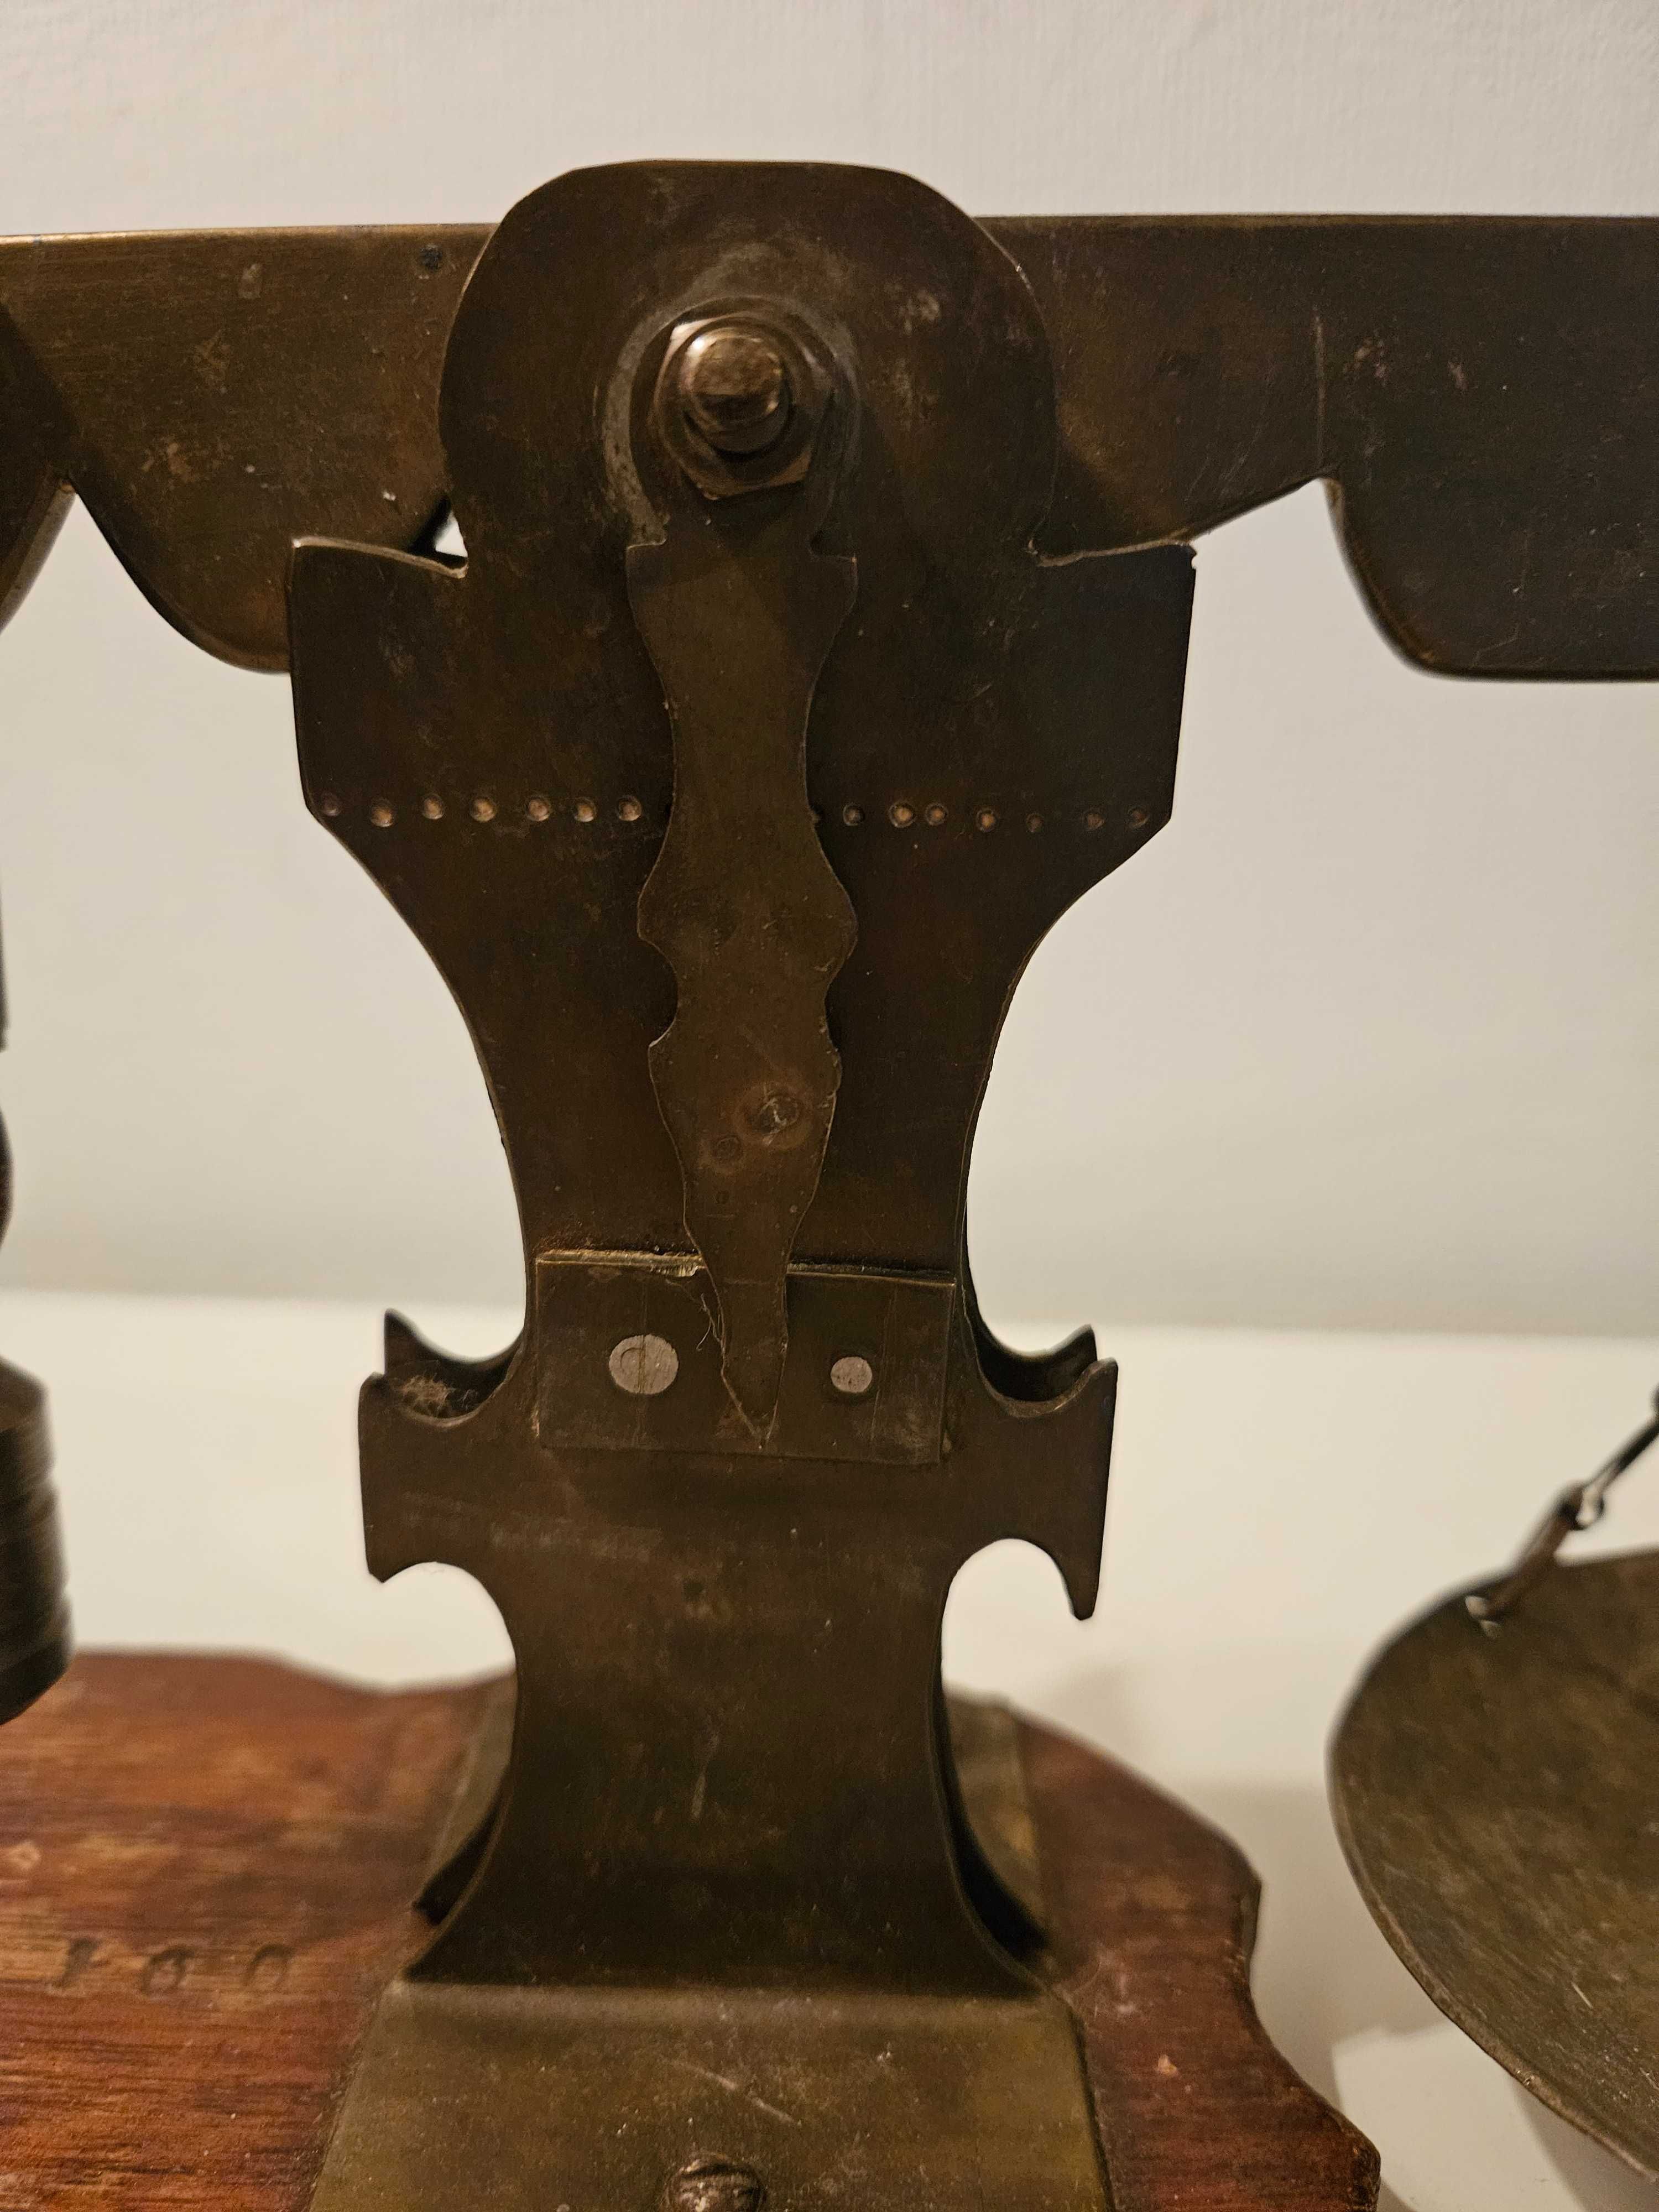 Stara oryginalna mosiężna waga wahadłowa na drewnianej podstawie